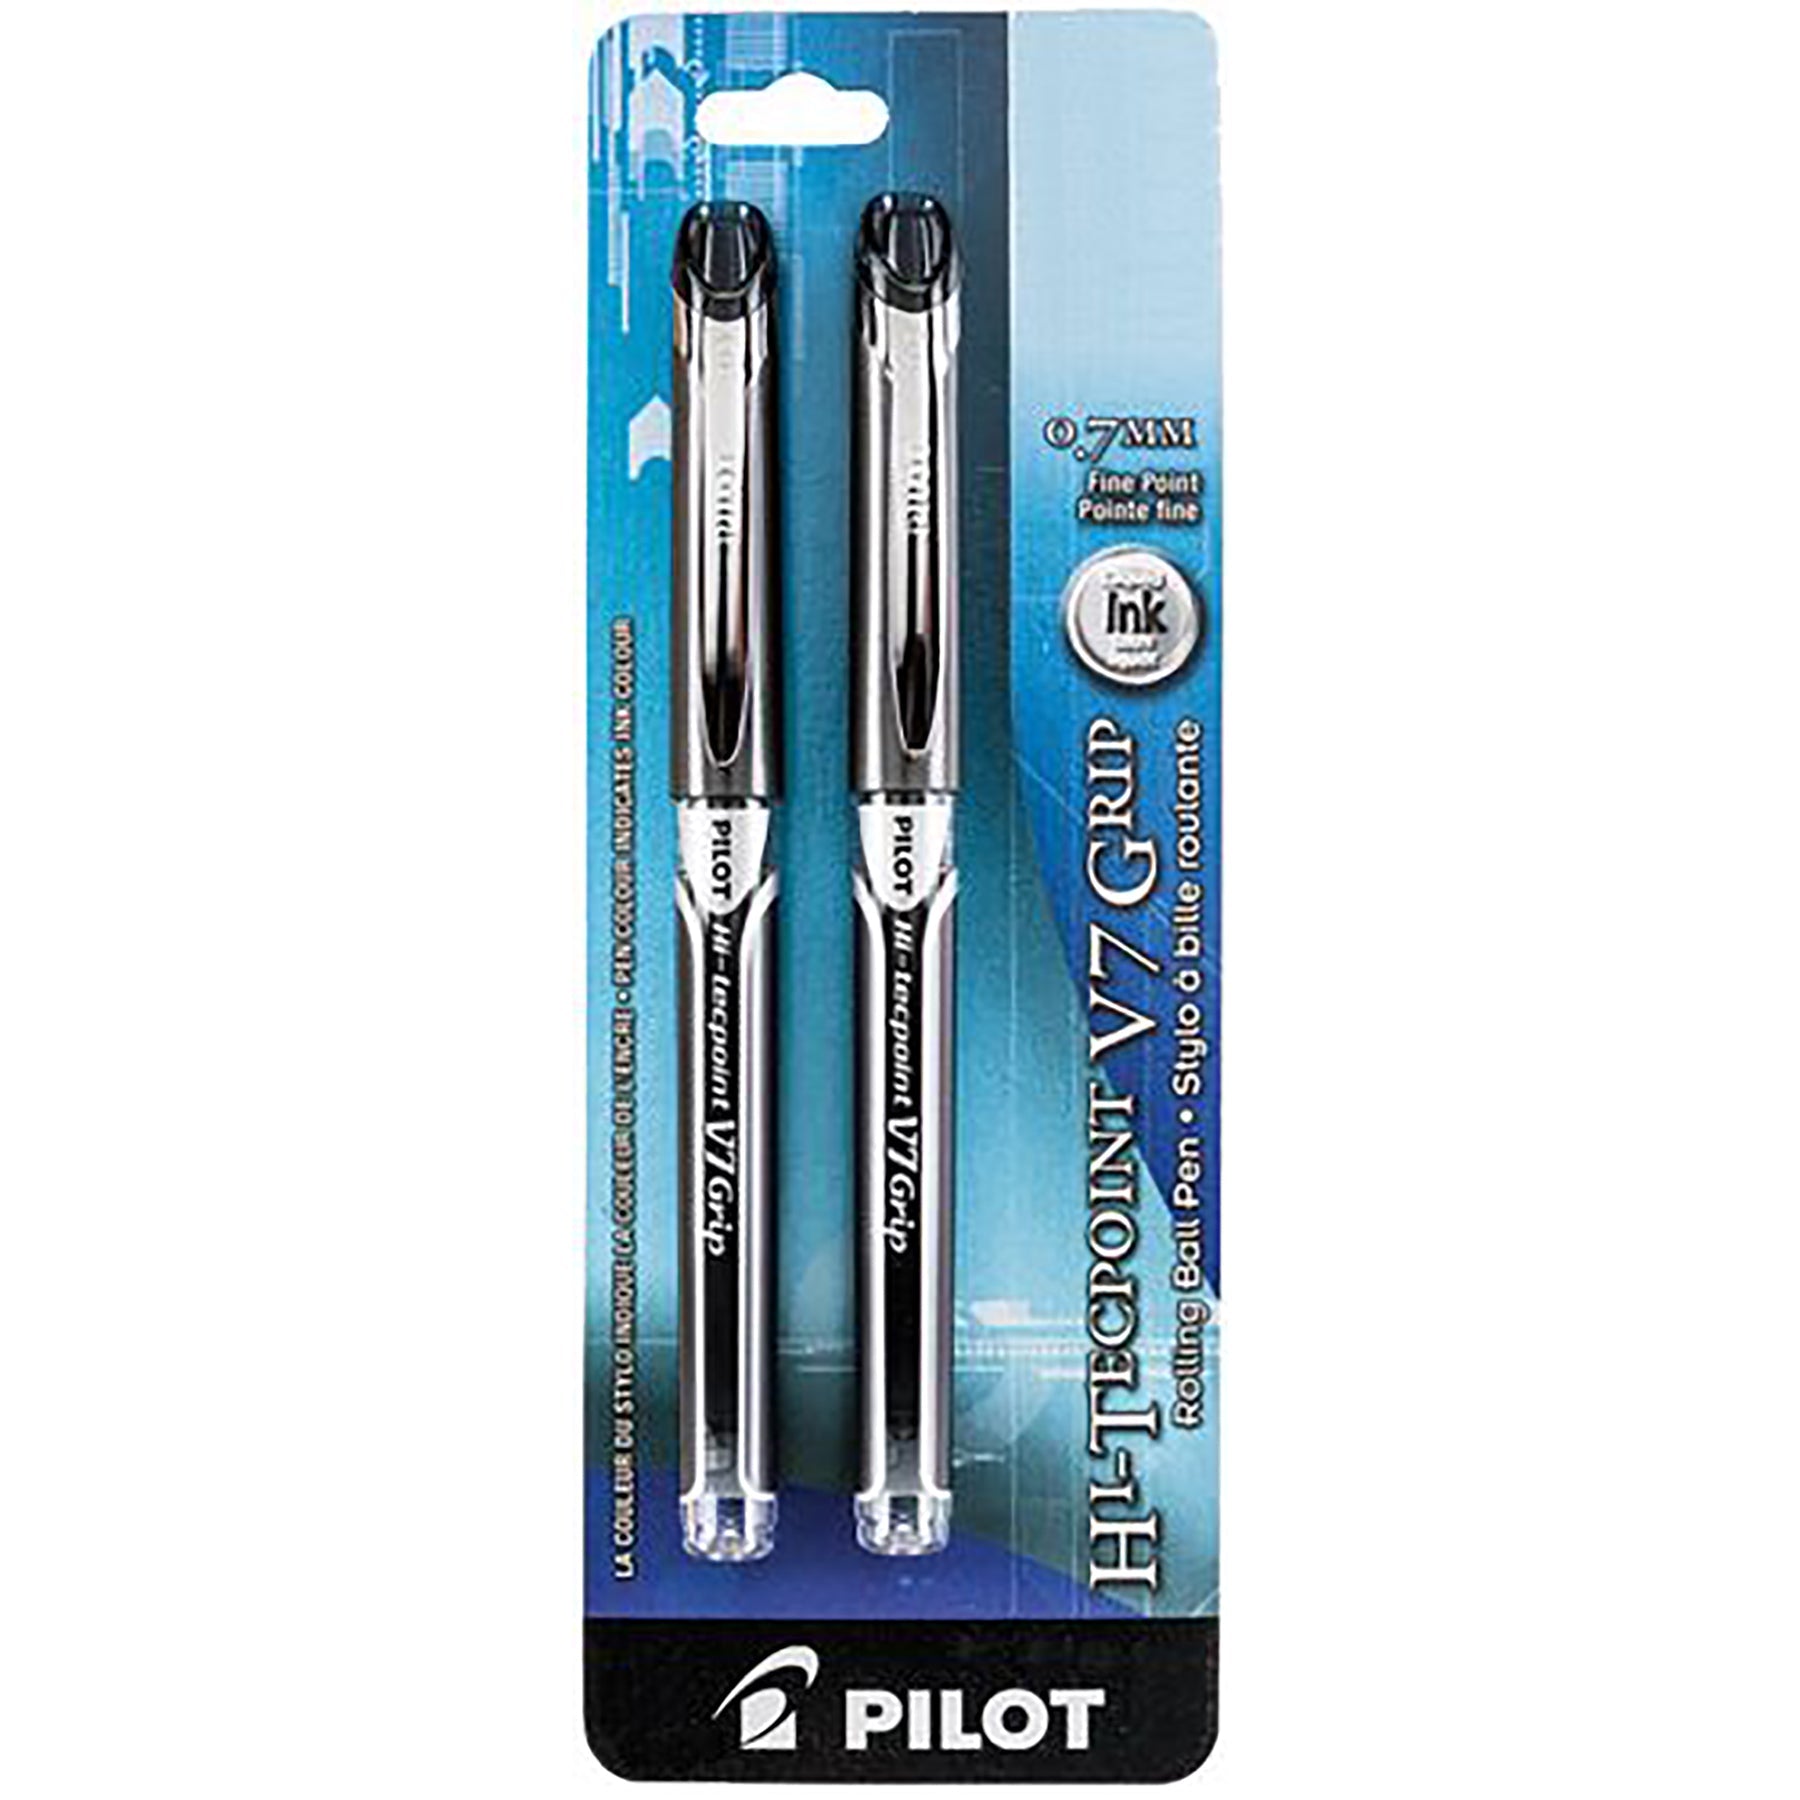 Pilot Hi-Tecpoint Grip 2 Pens - Black Liquid Ink 0.7mm